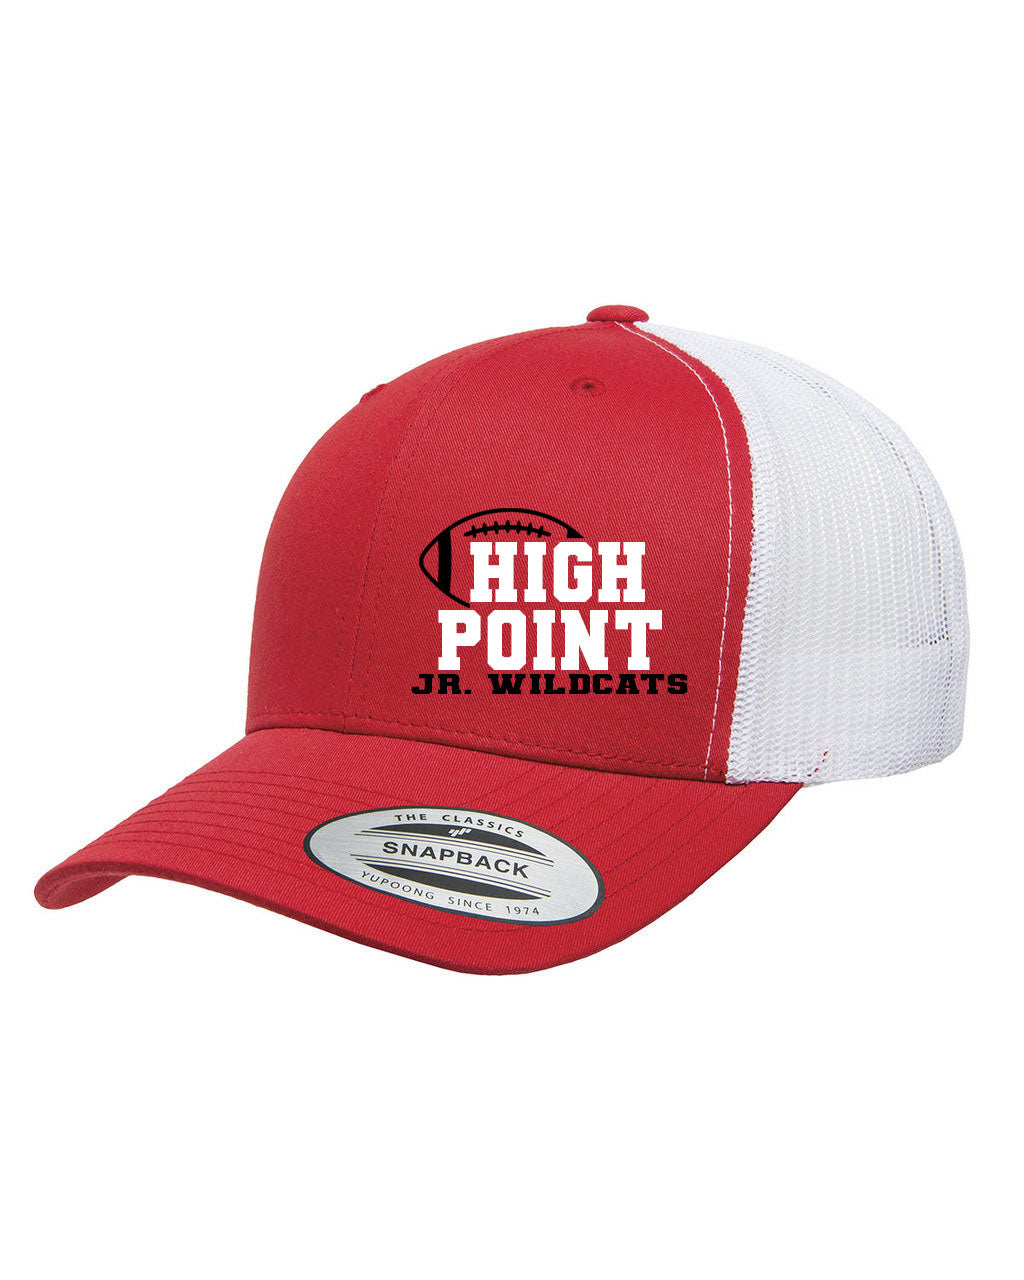 High Point Design 2 Trucker Hat